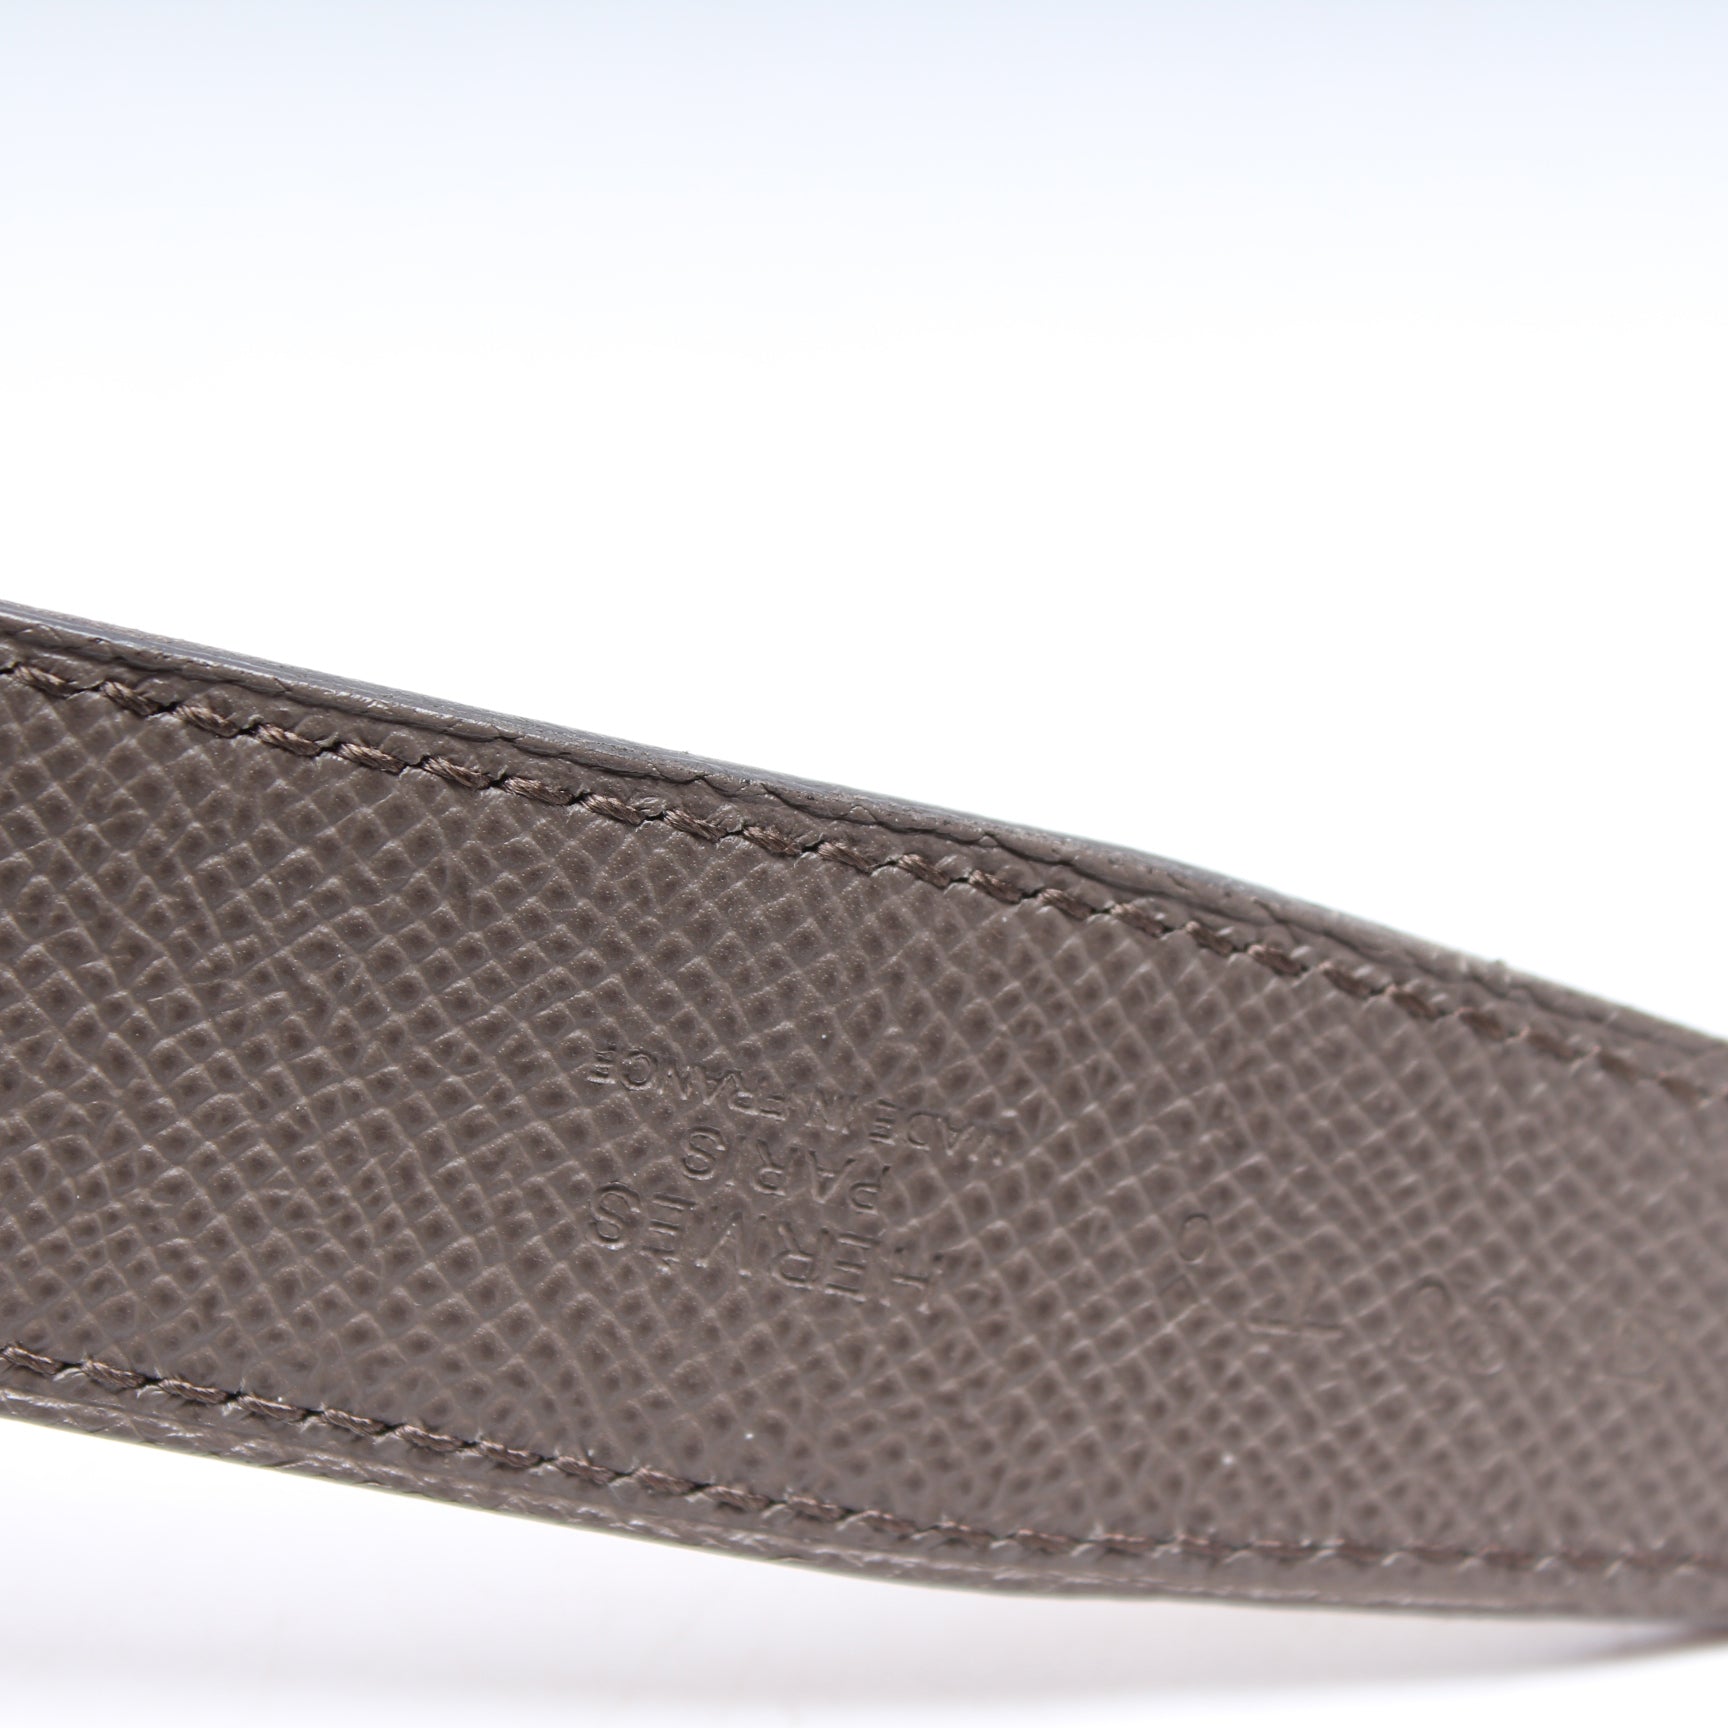 MP358 Monogram Leather Reversible Belt Size 80/32 – Keeks Designer